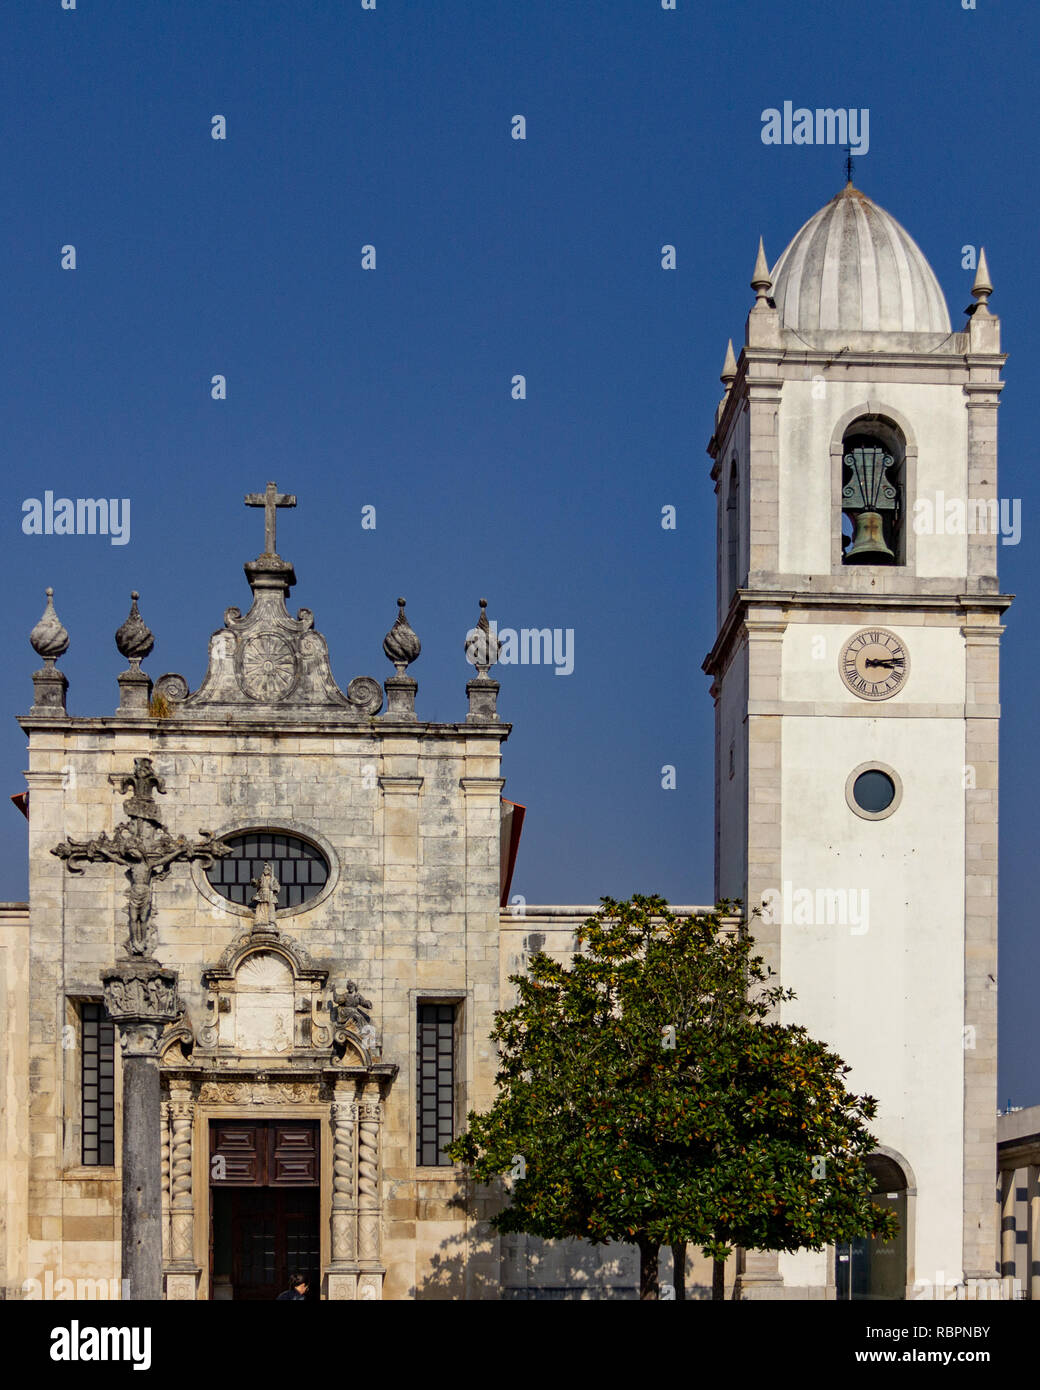 Église de Saint Jean l'Évangéliste (Ingreja de São João Evangelista) à Aveiro, Portugal sous un ciel bleu Banque D'Images